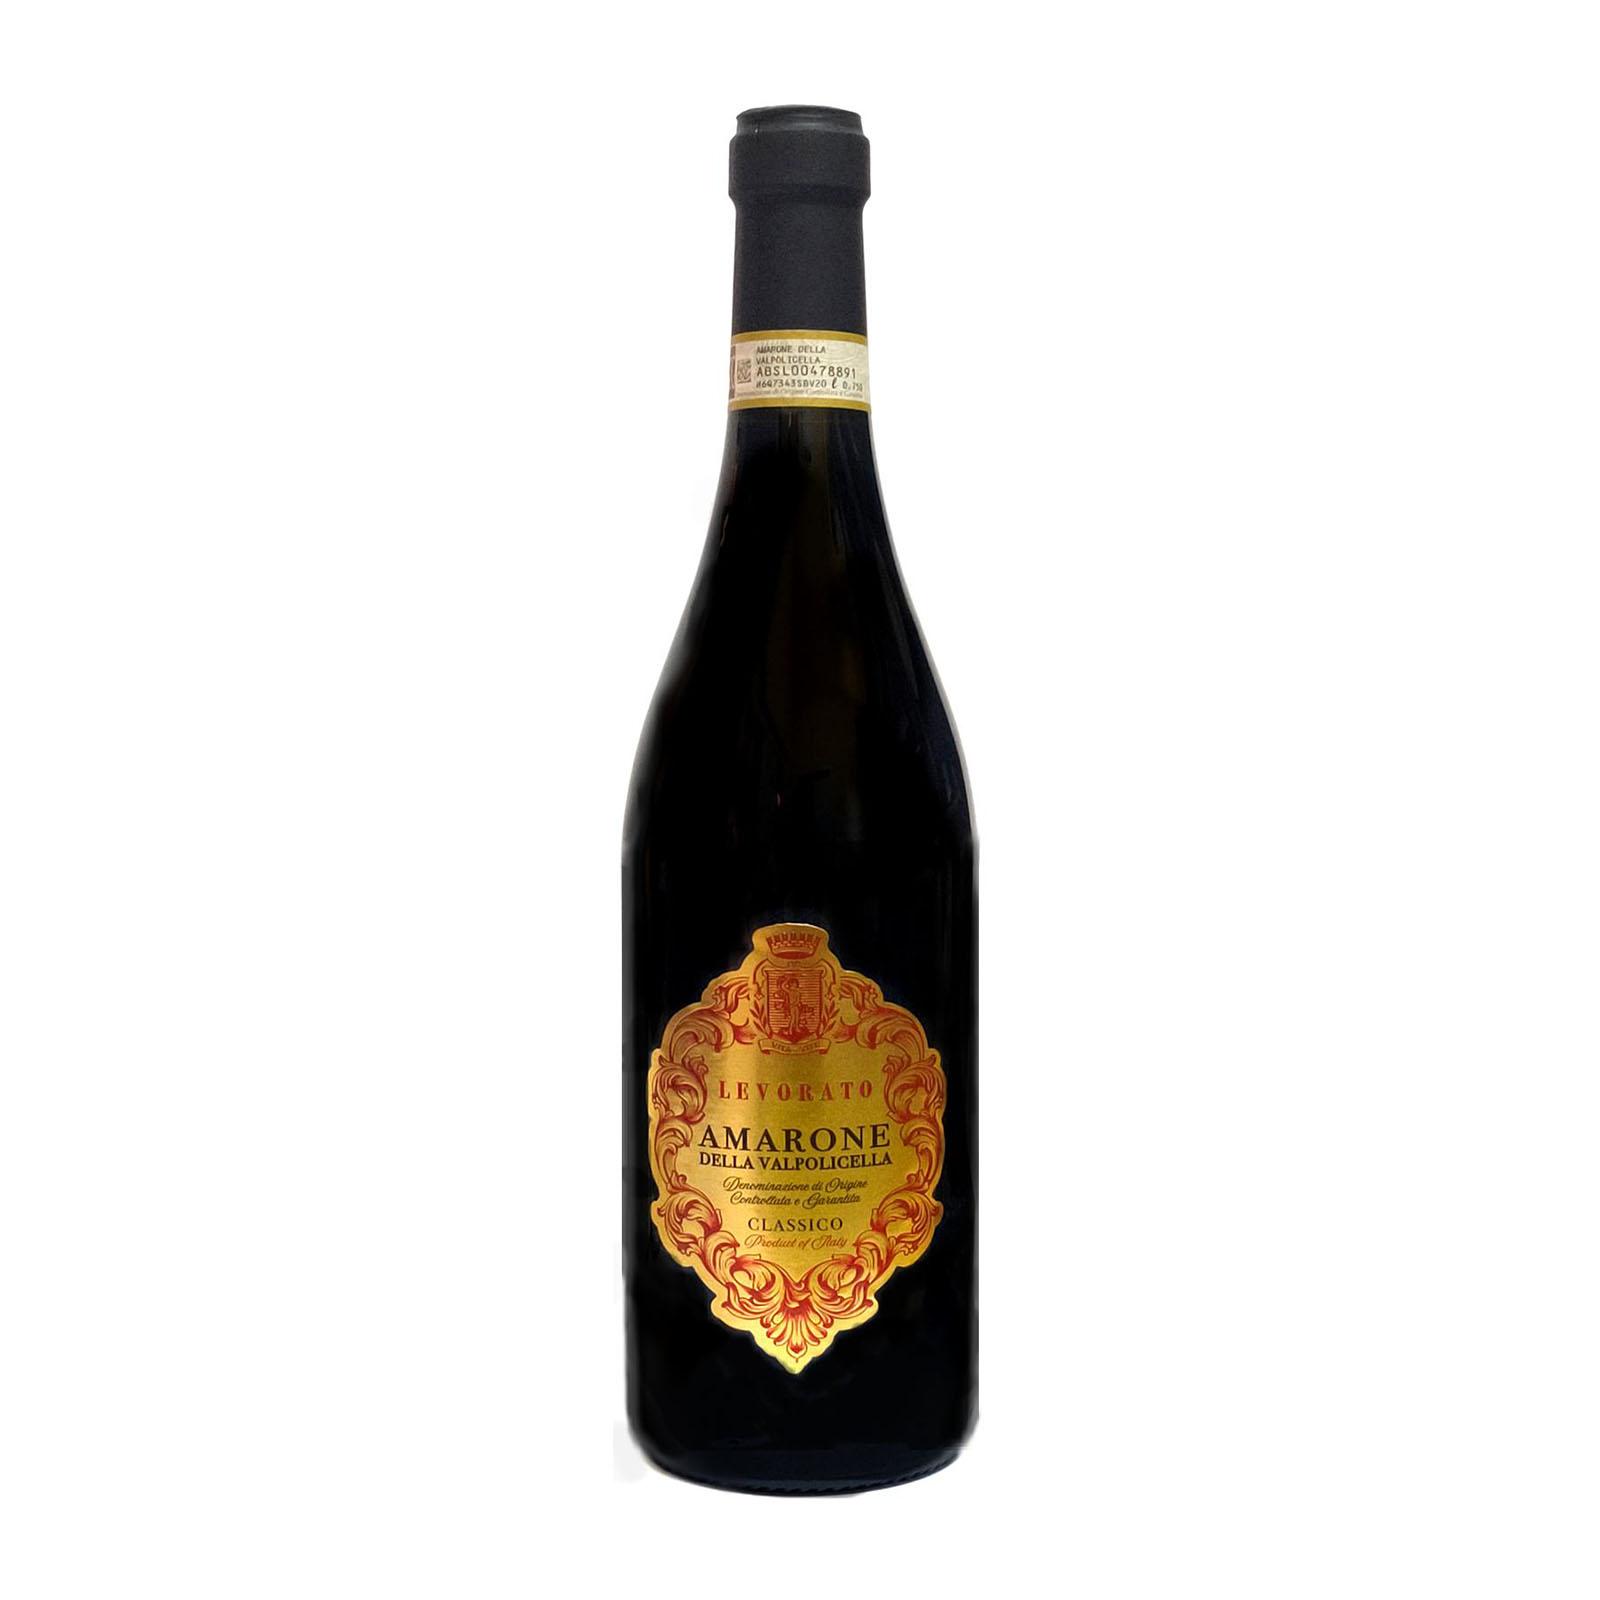 Levorato Amarone della Valpolicella Classico DOCG 2015 Red Wine – Italy